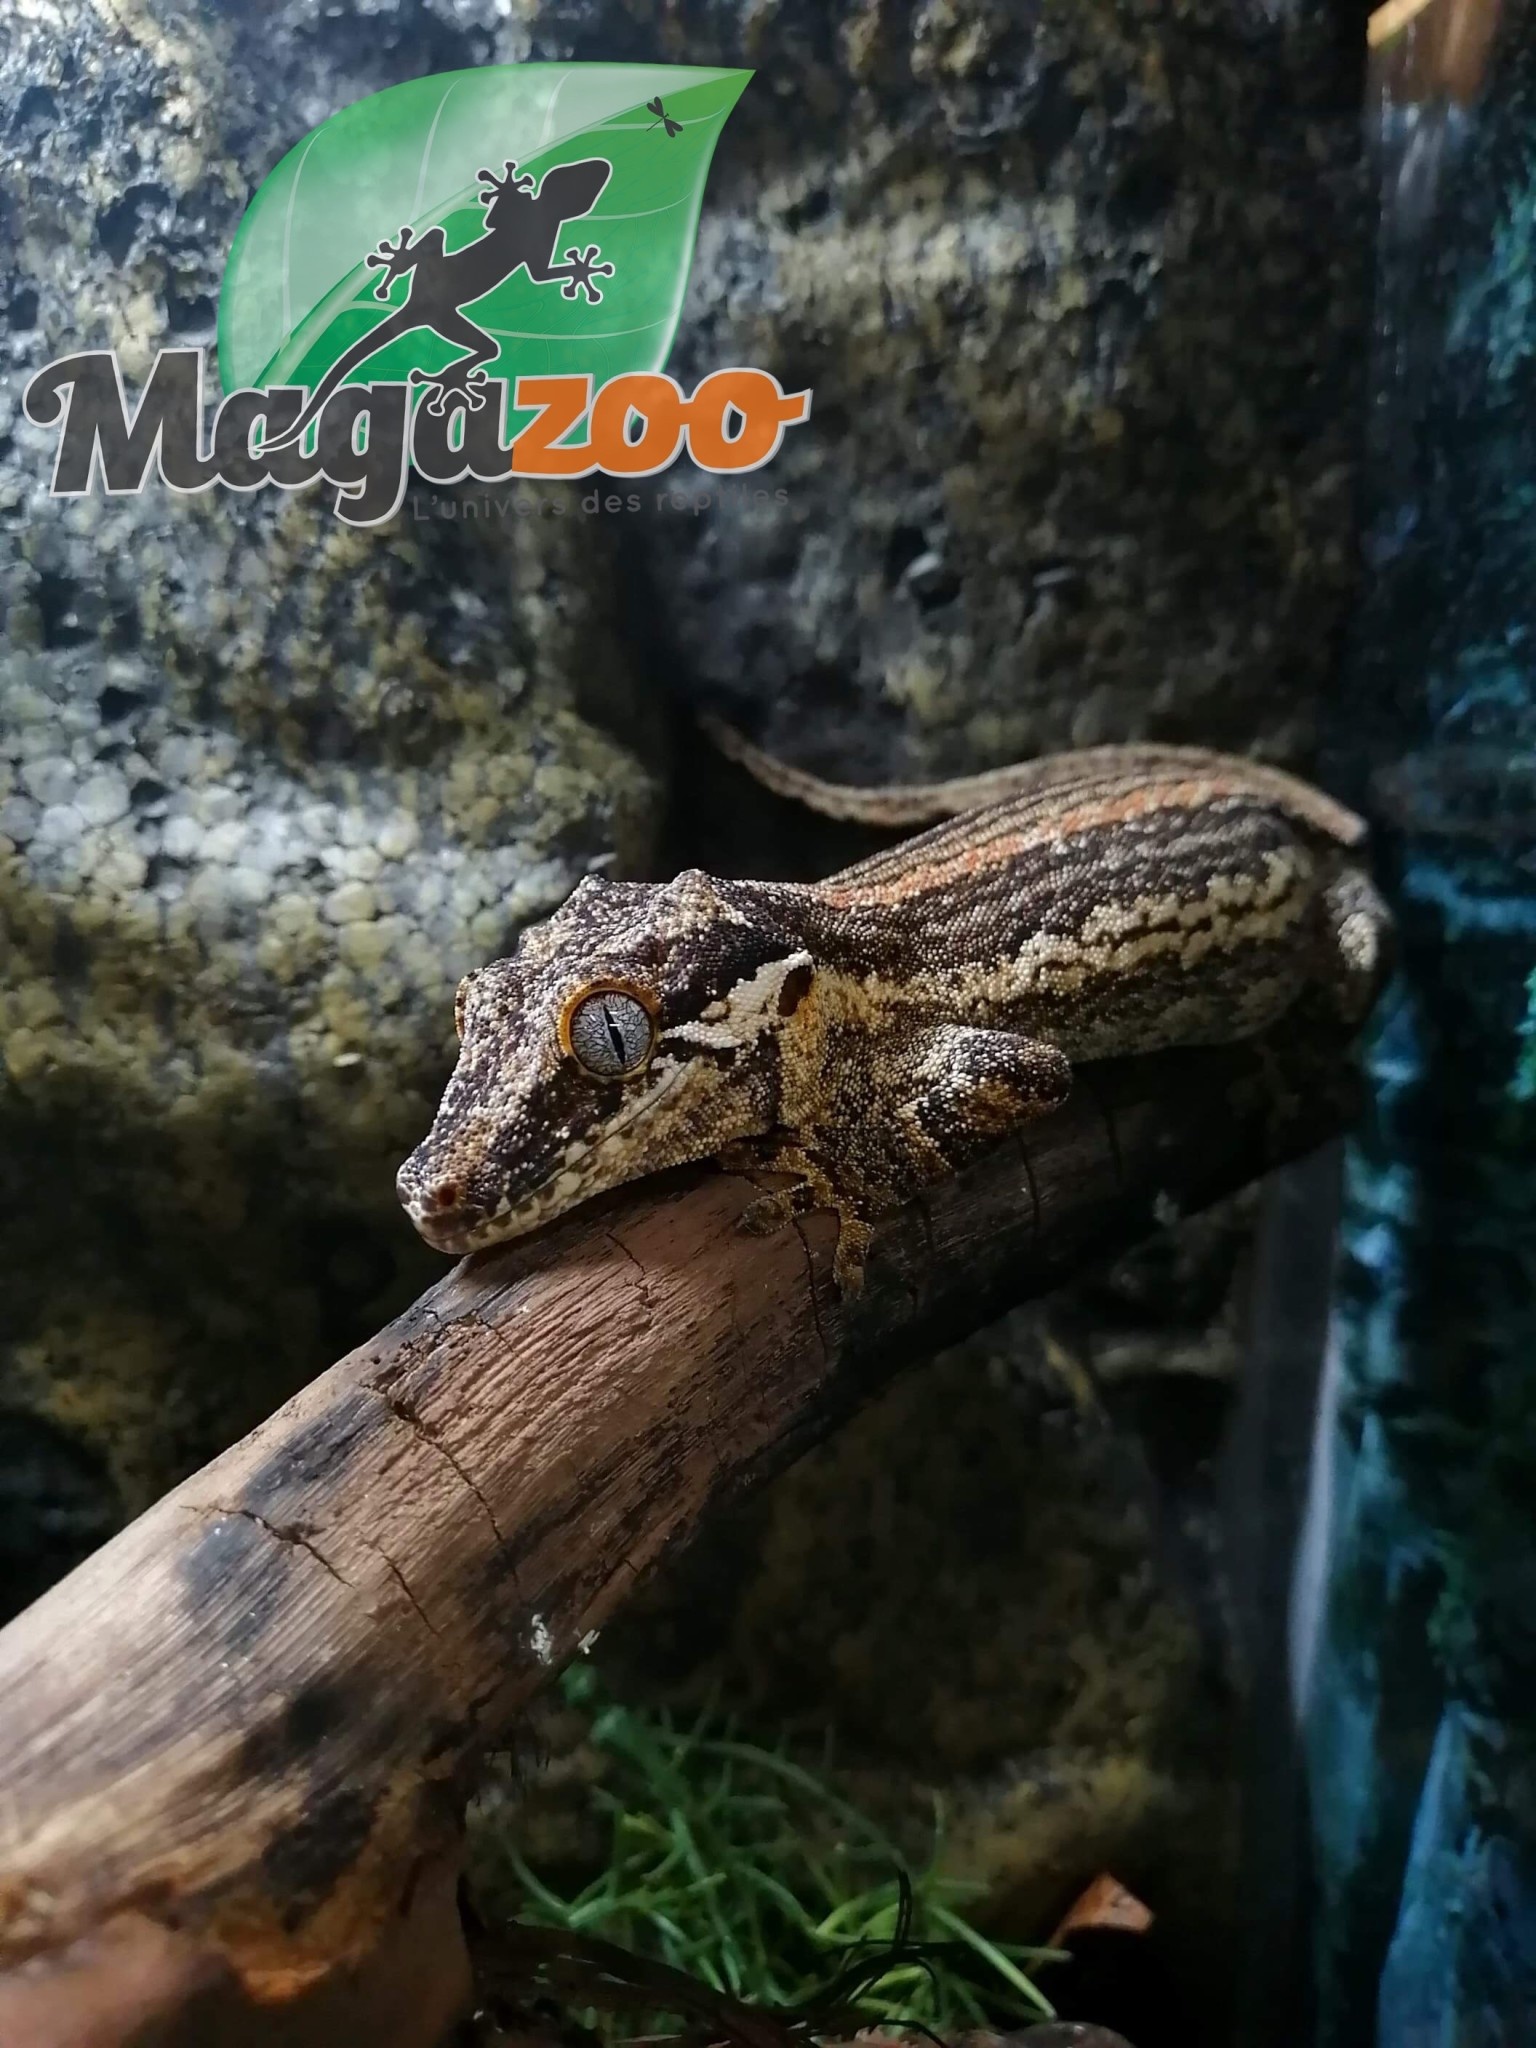 Magazoo Gecko gargouille - Gargoyle gecko